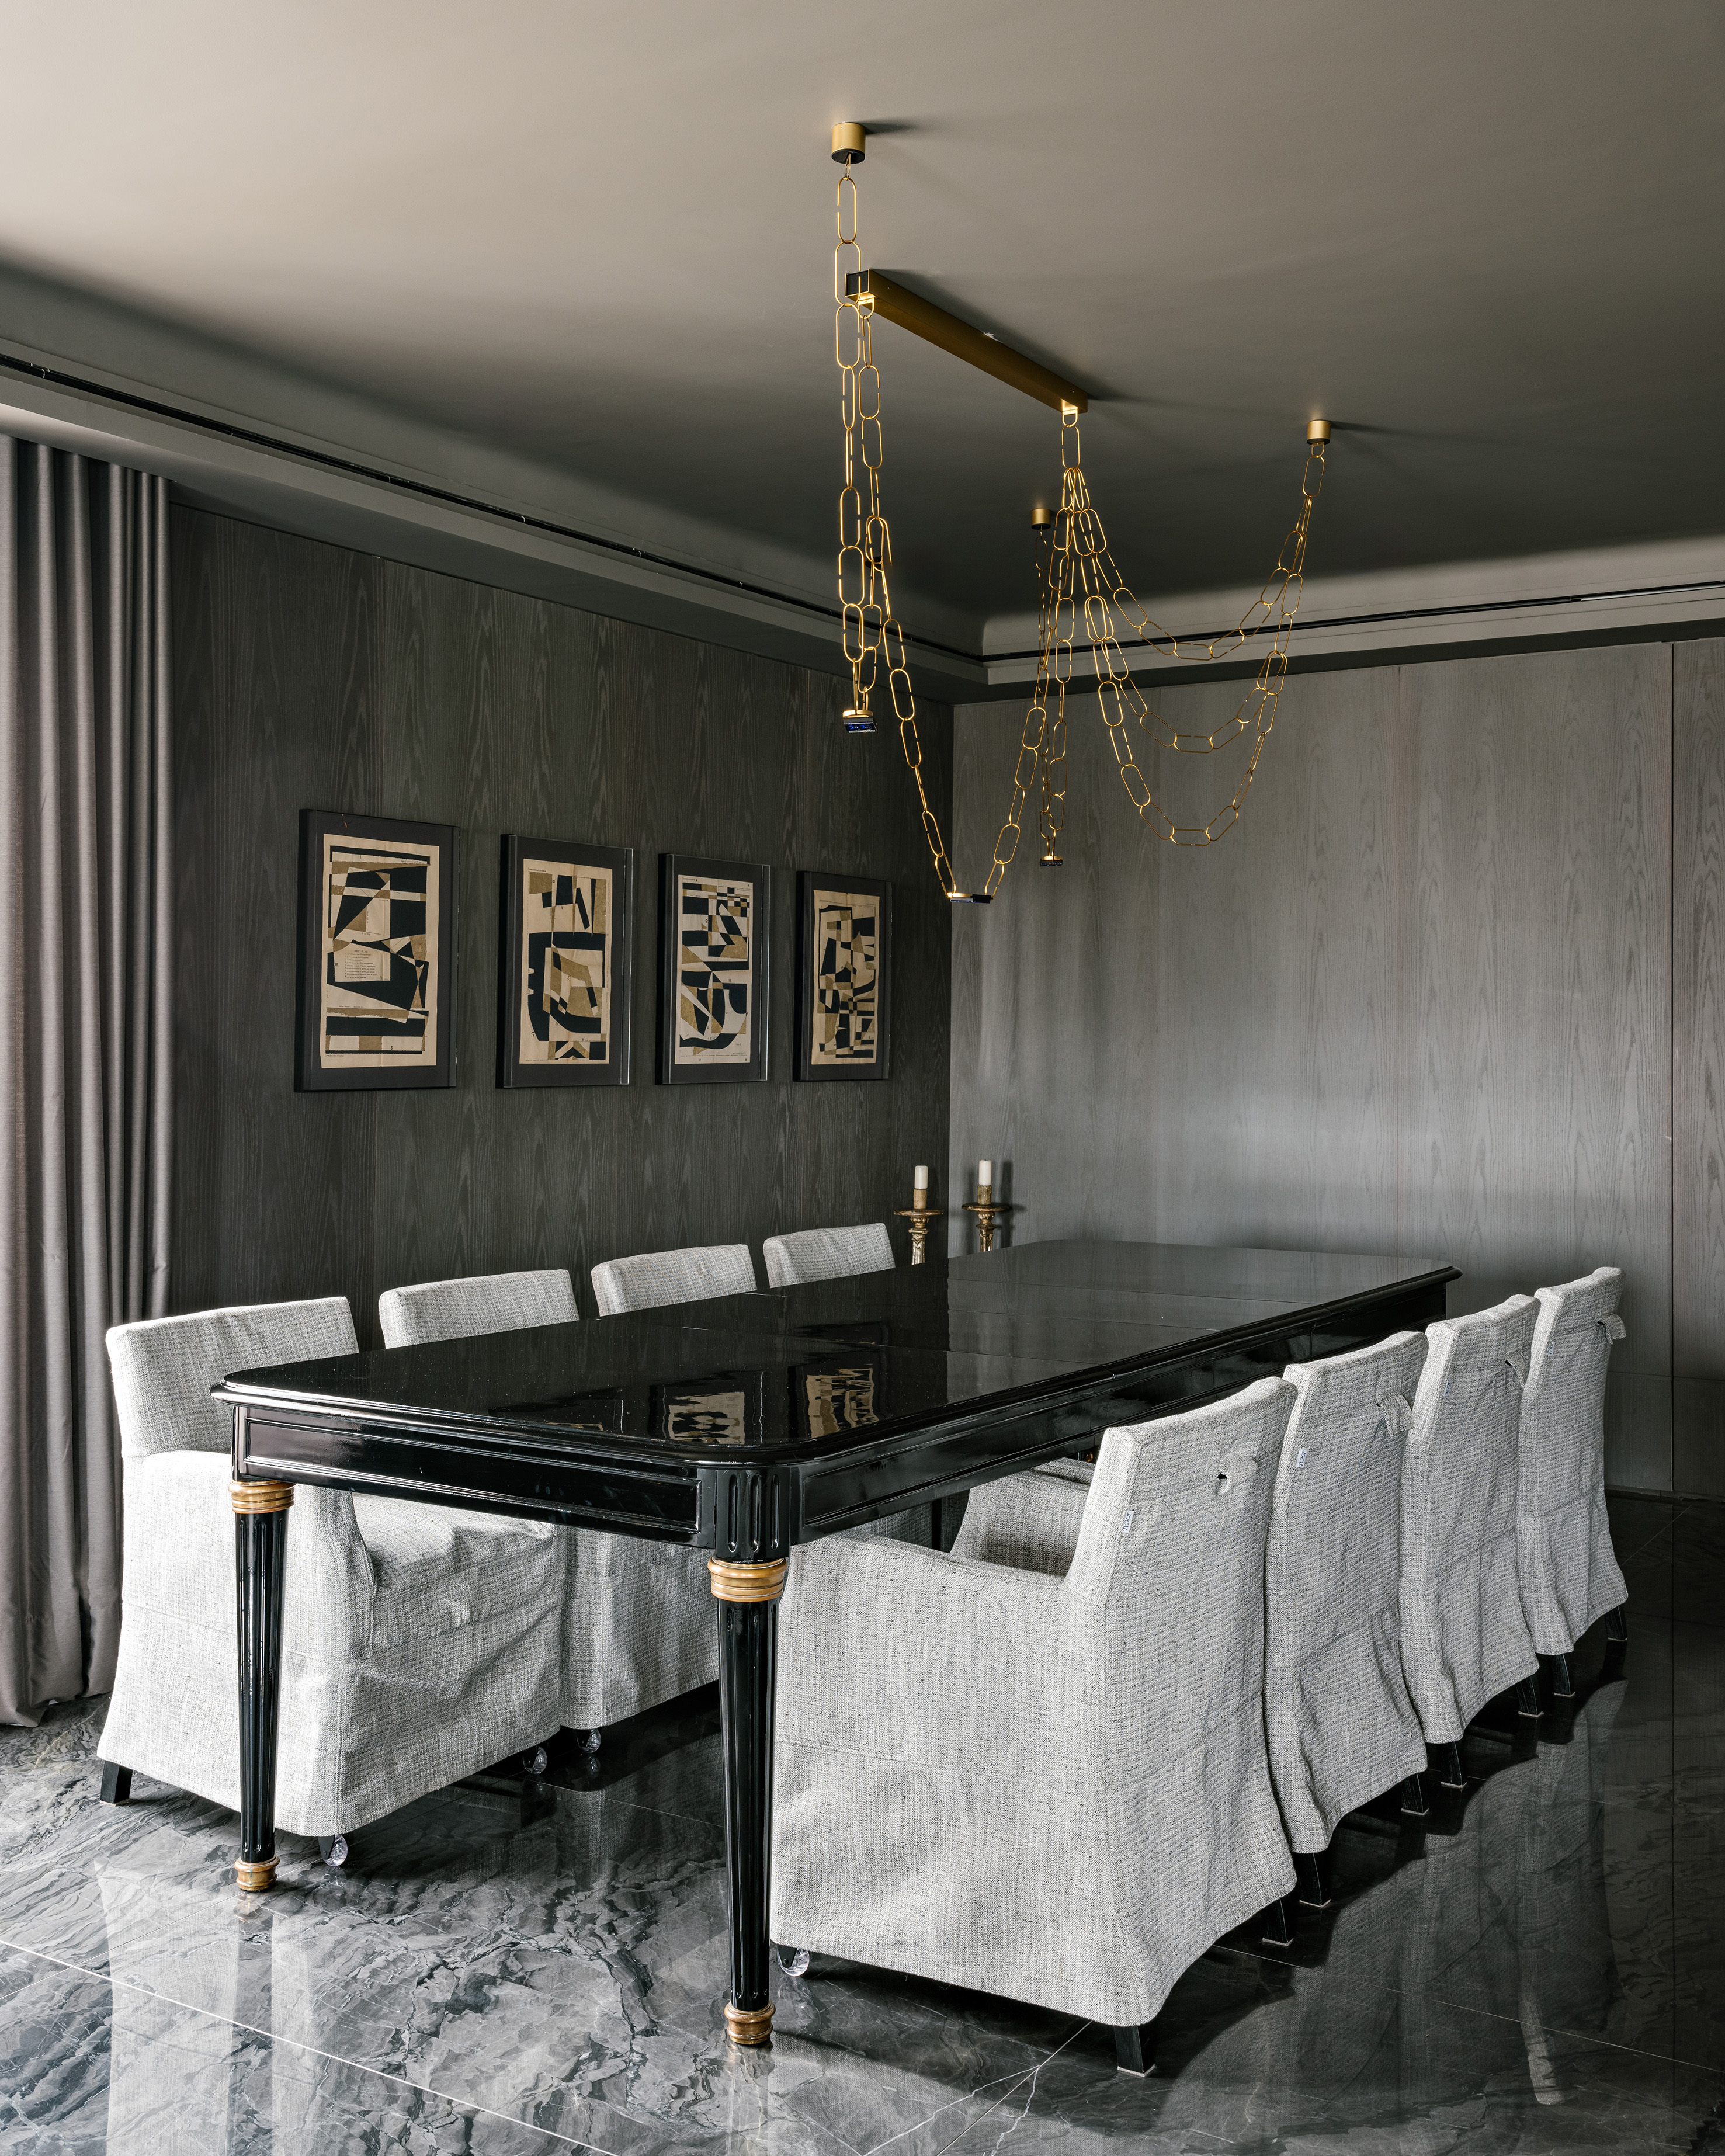 Piso de mármore e parede com painéis escuros dão elegância sóbria a apê. Projeto de DB Arquitetos. Na foto, sala de jantar, piso de mármore, mesa preta, cadeiras com capas brancas.